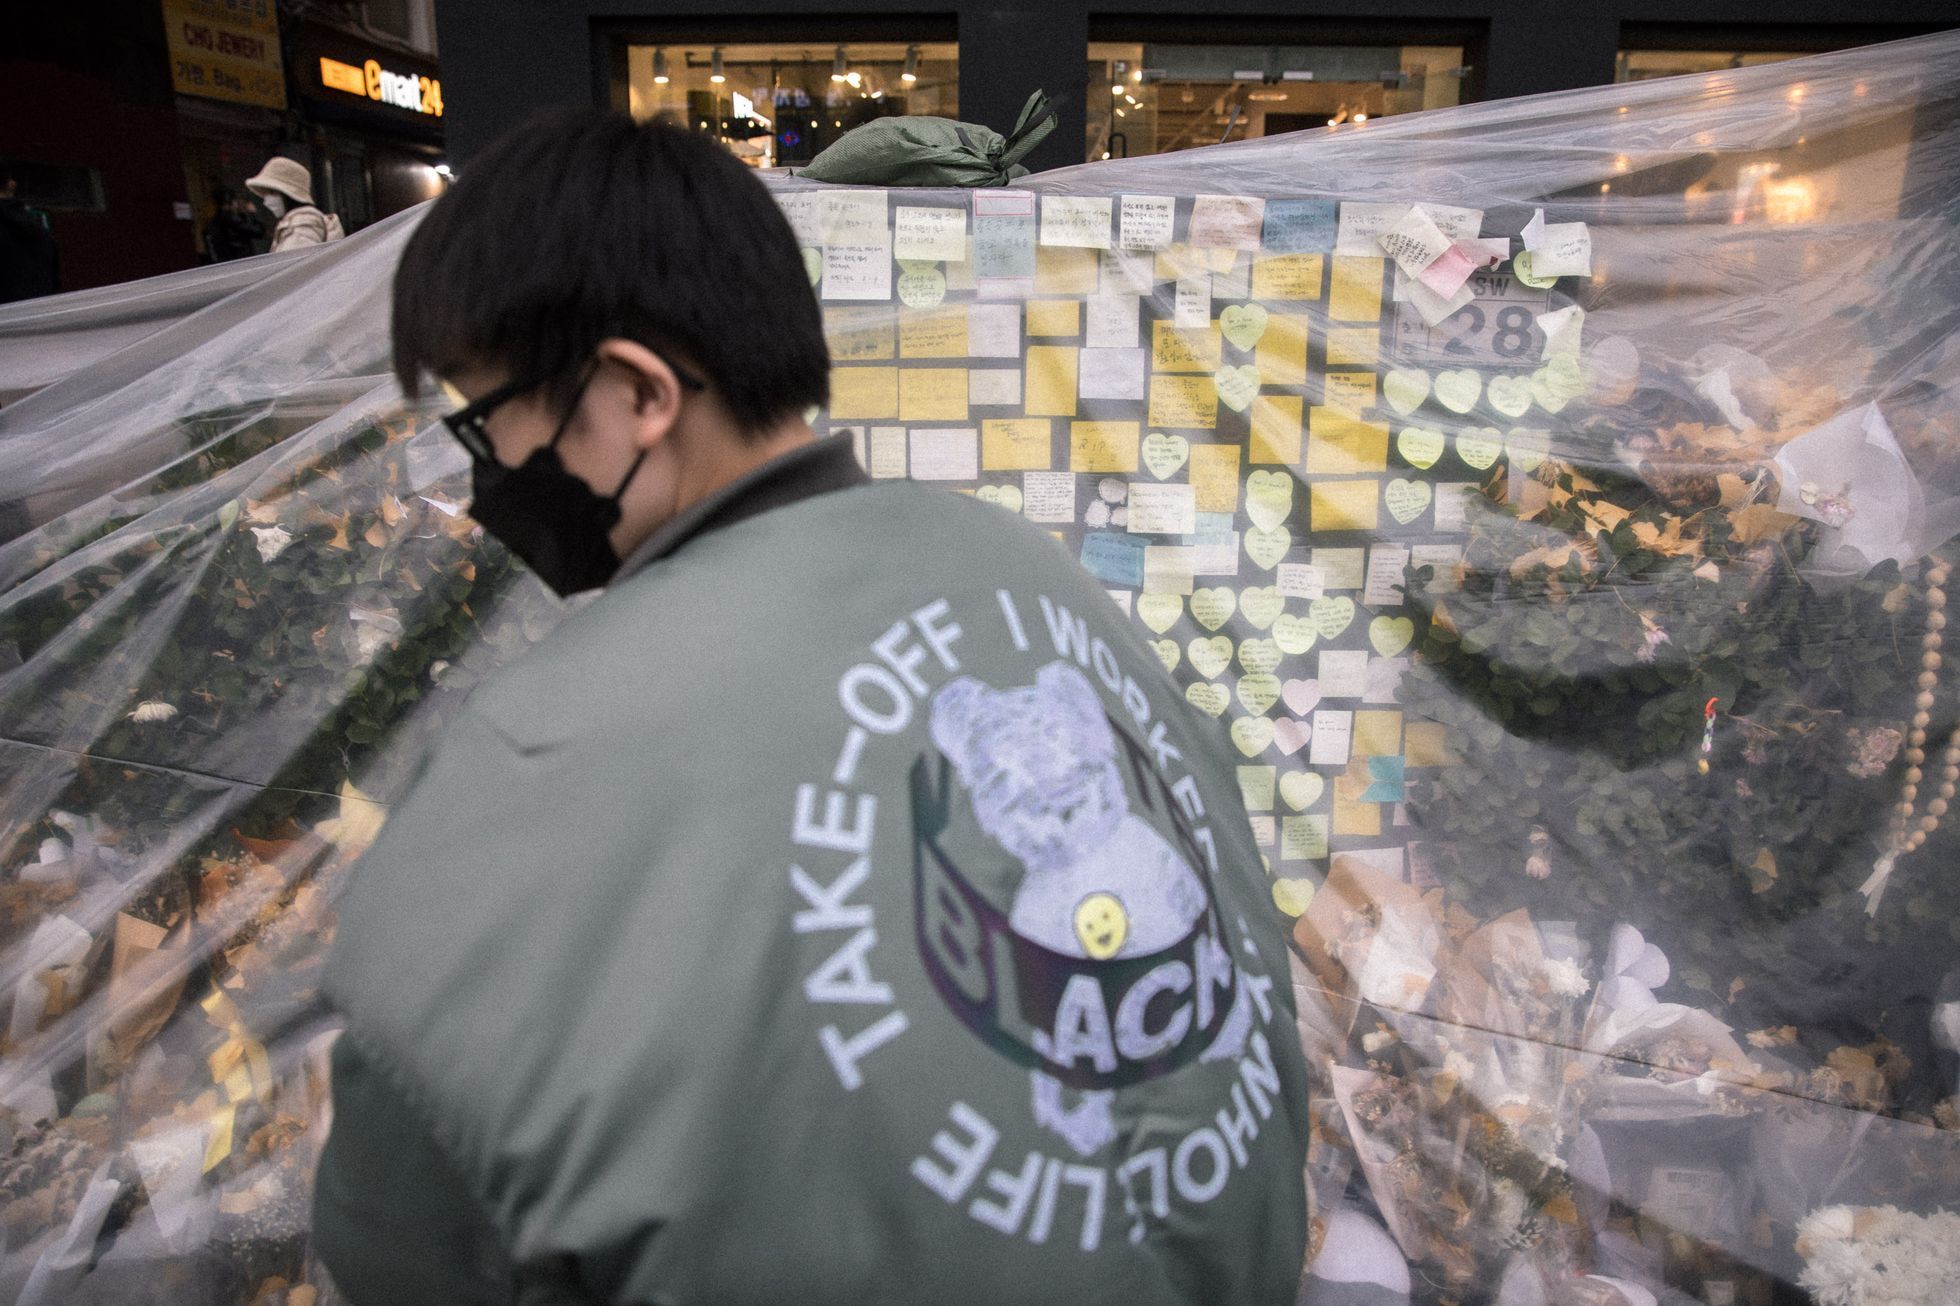 Ulička v Soulu, čtvrť Itaewon, kde došlo k ušlapání 158 lidí, měsíc poté - pieta, květiny, památka